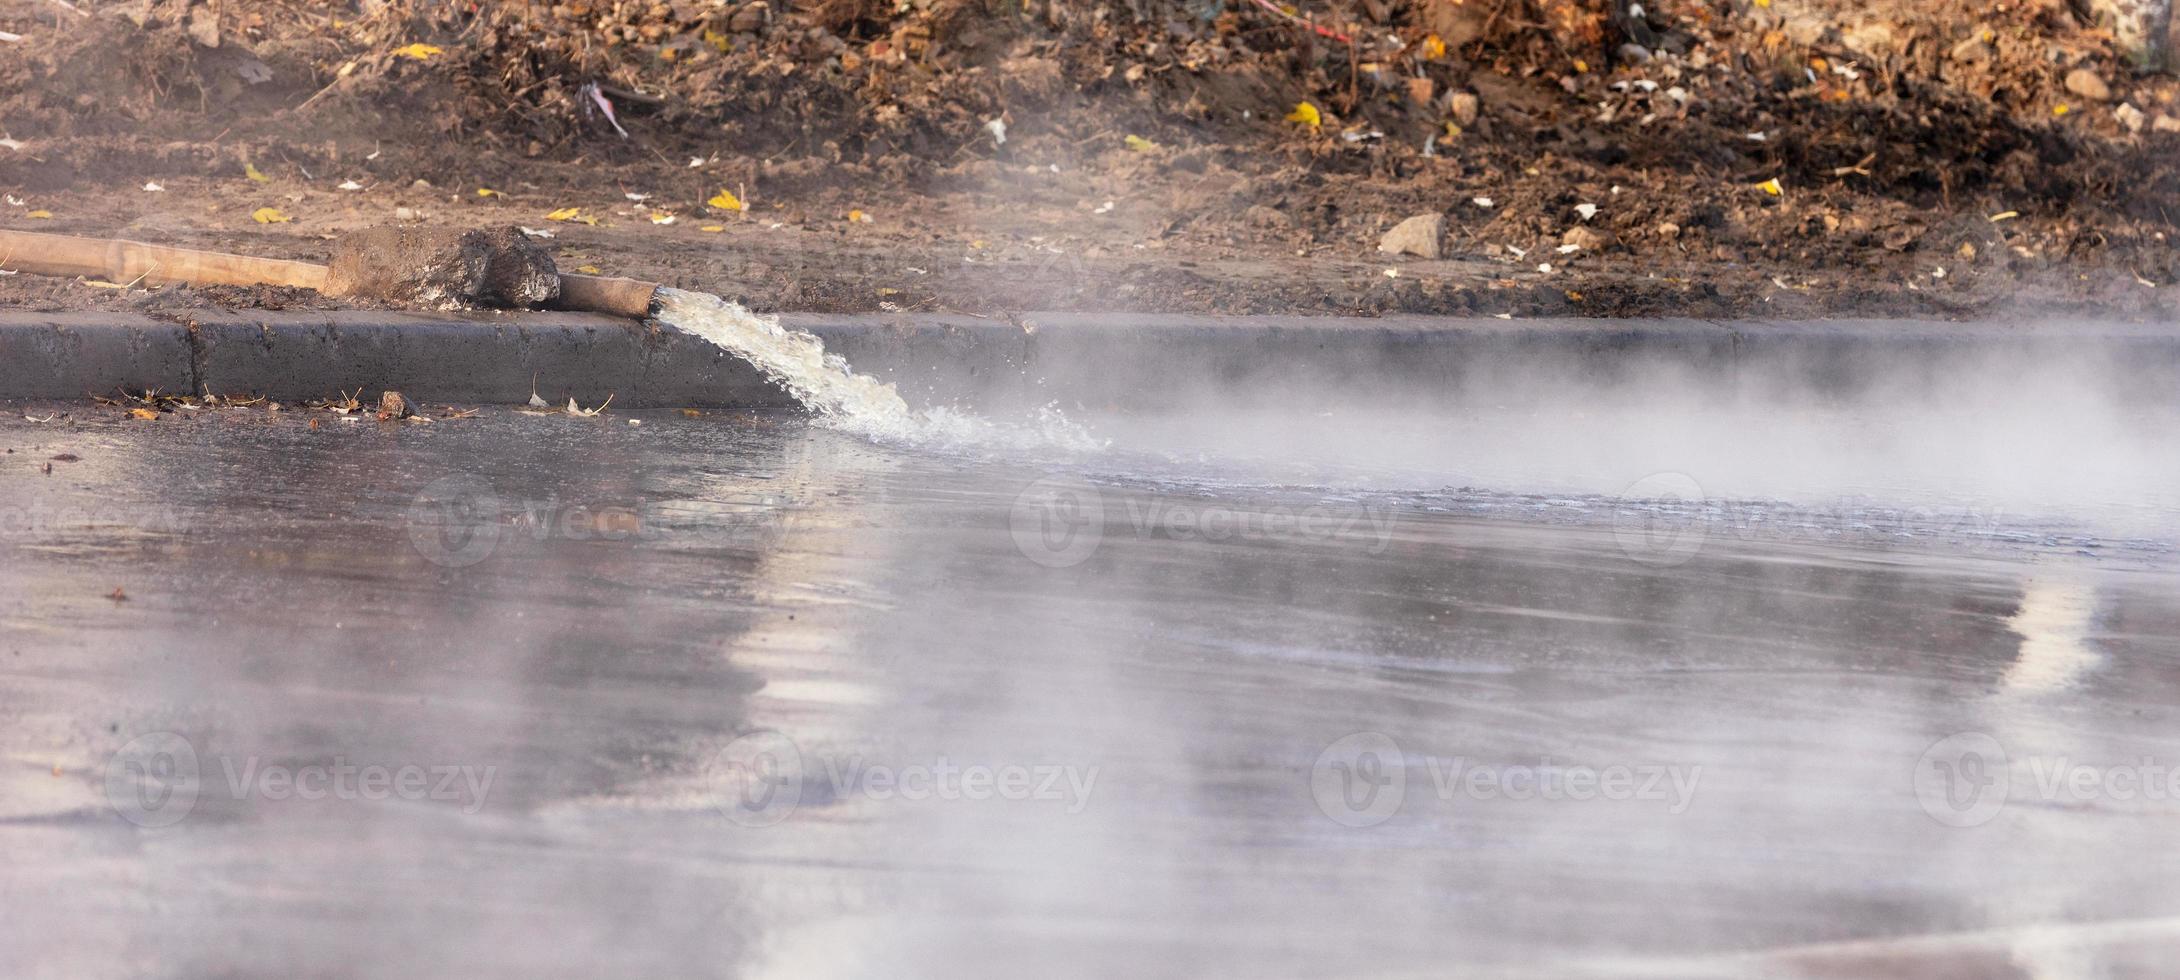 genombrottsrör med varmvatten, vatten pumpas ut på vägen med pump och brandslang, närbild. foto